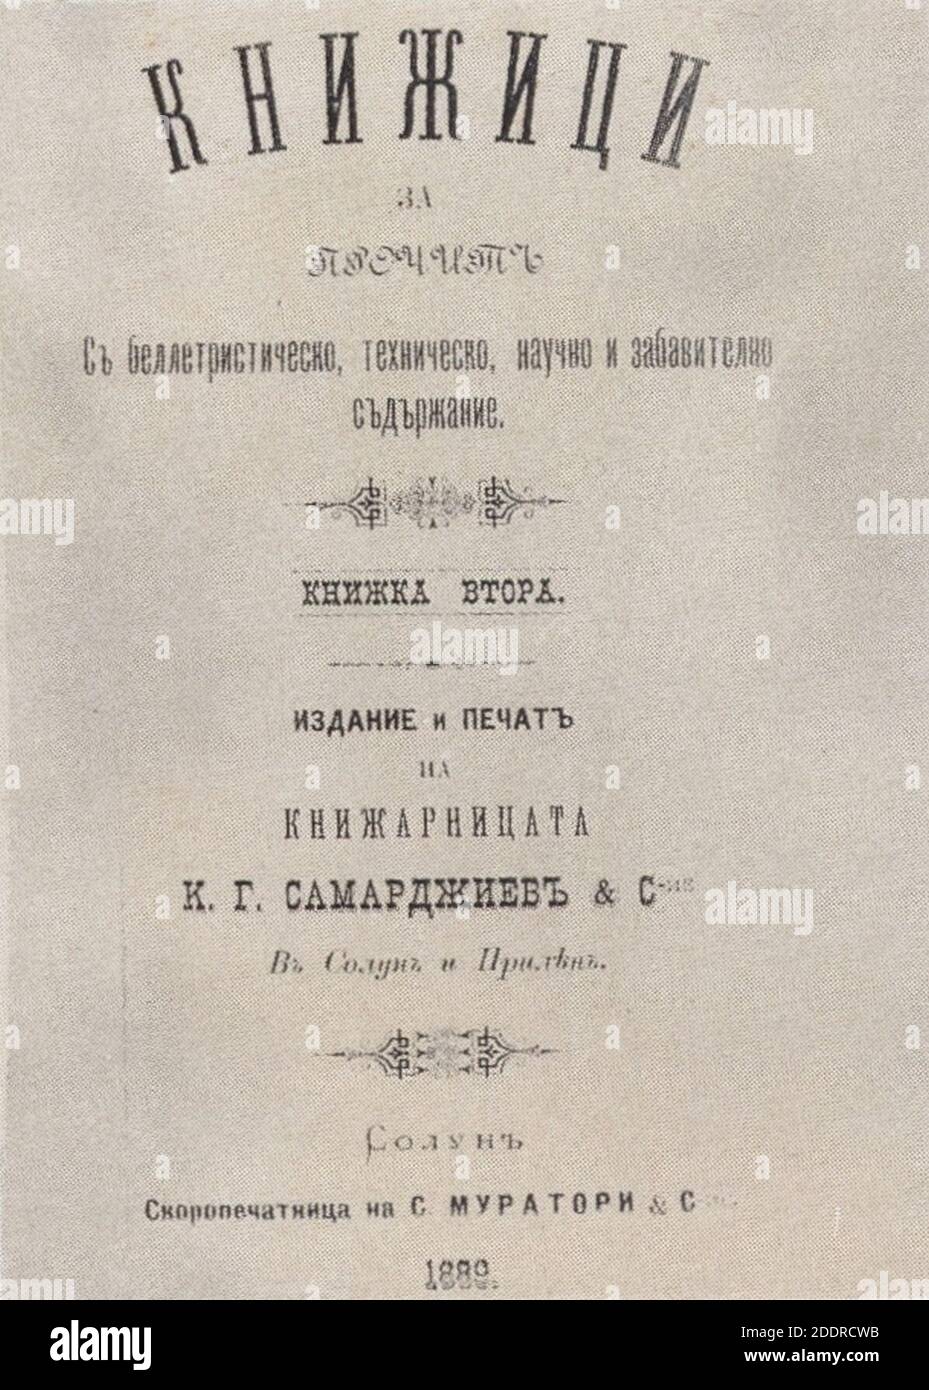 Knizhitsi-Samardzhiev-Solun-1889. Stock Photo